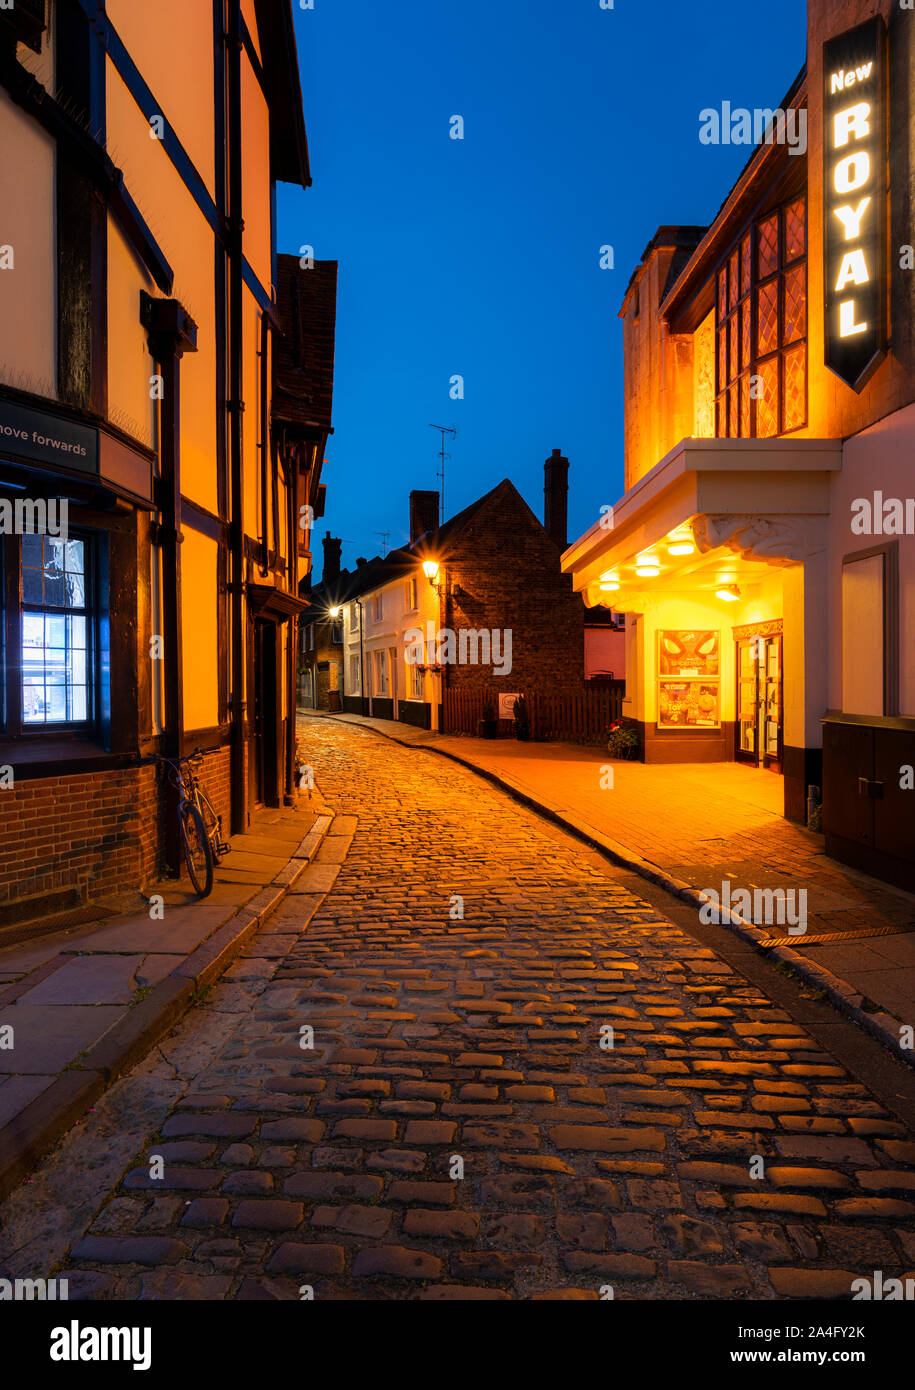 Rues pavées de nuit dans la ville historique de Faversham, Kent. Banque D'Images